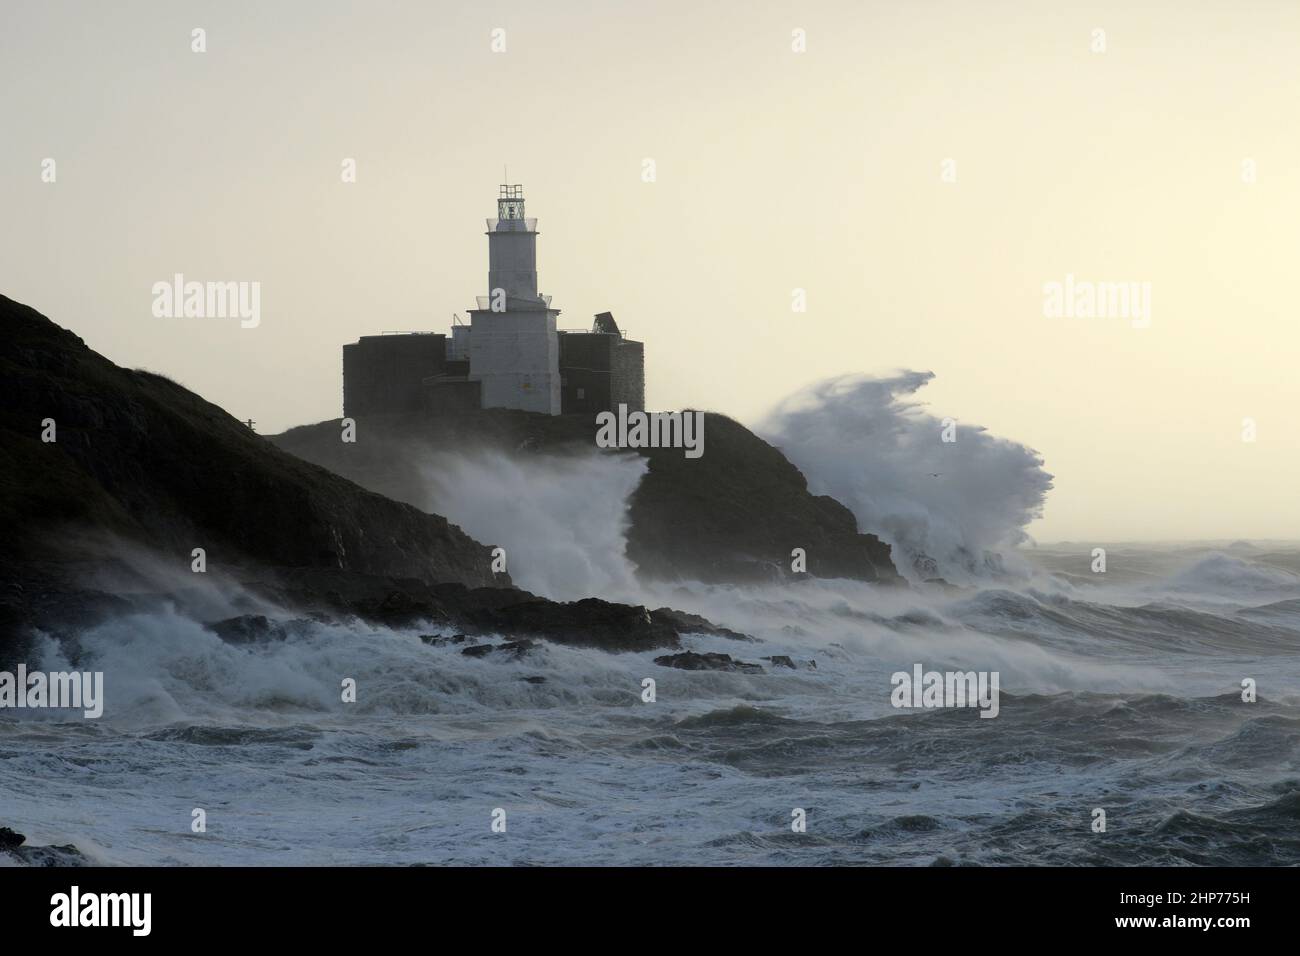 Sturm Eunice an den Mumbles. Swansea, Wales, Großbritannien. Riesige Wellen krachen über Leuchtturm und Landzunge, 90mph Winde wehen in den Wind. Stockfoto